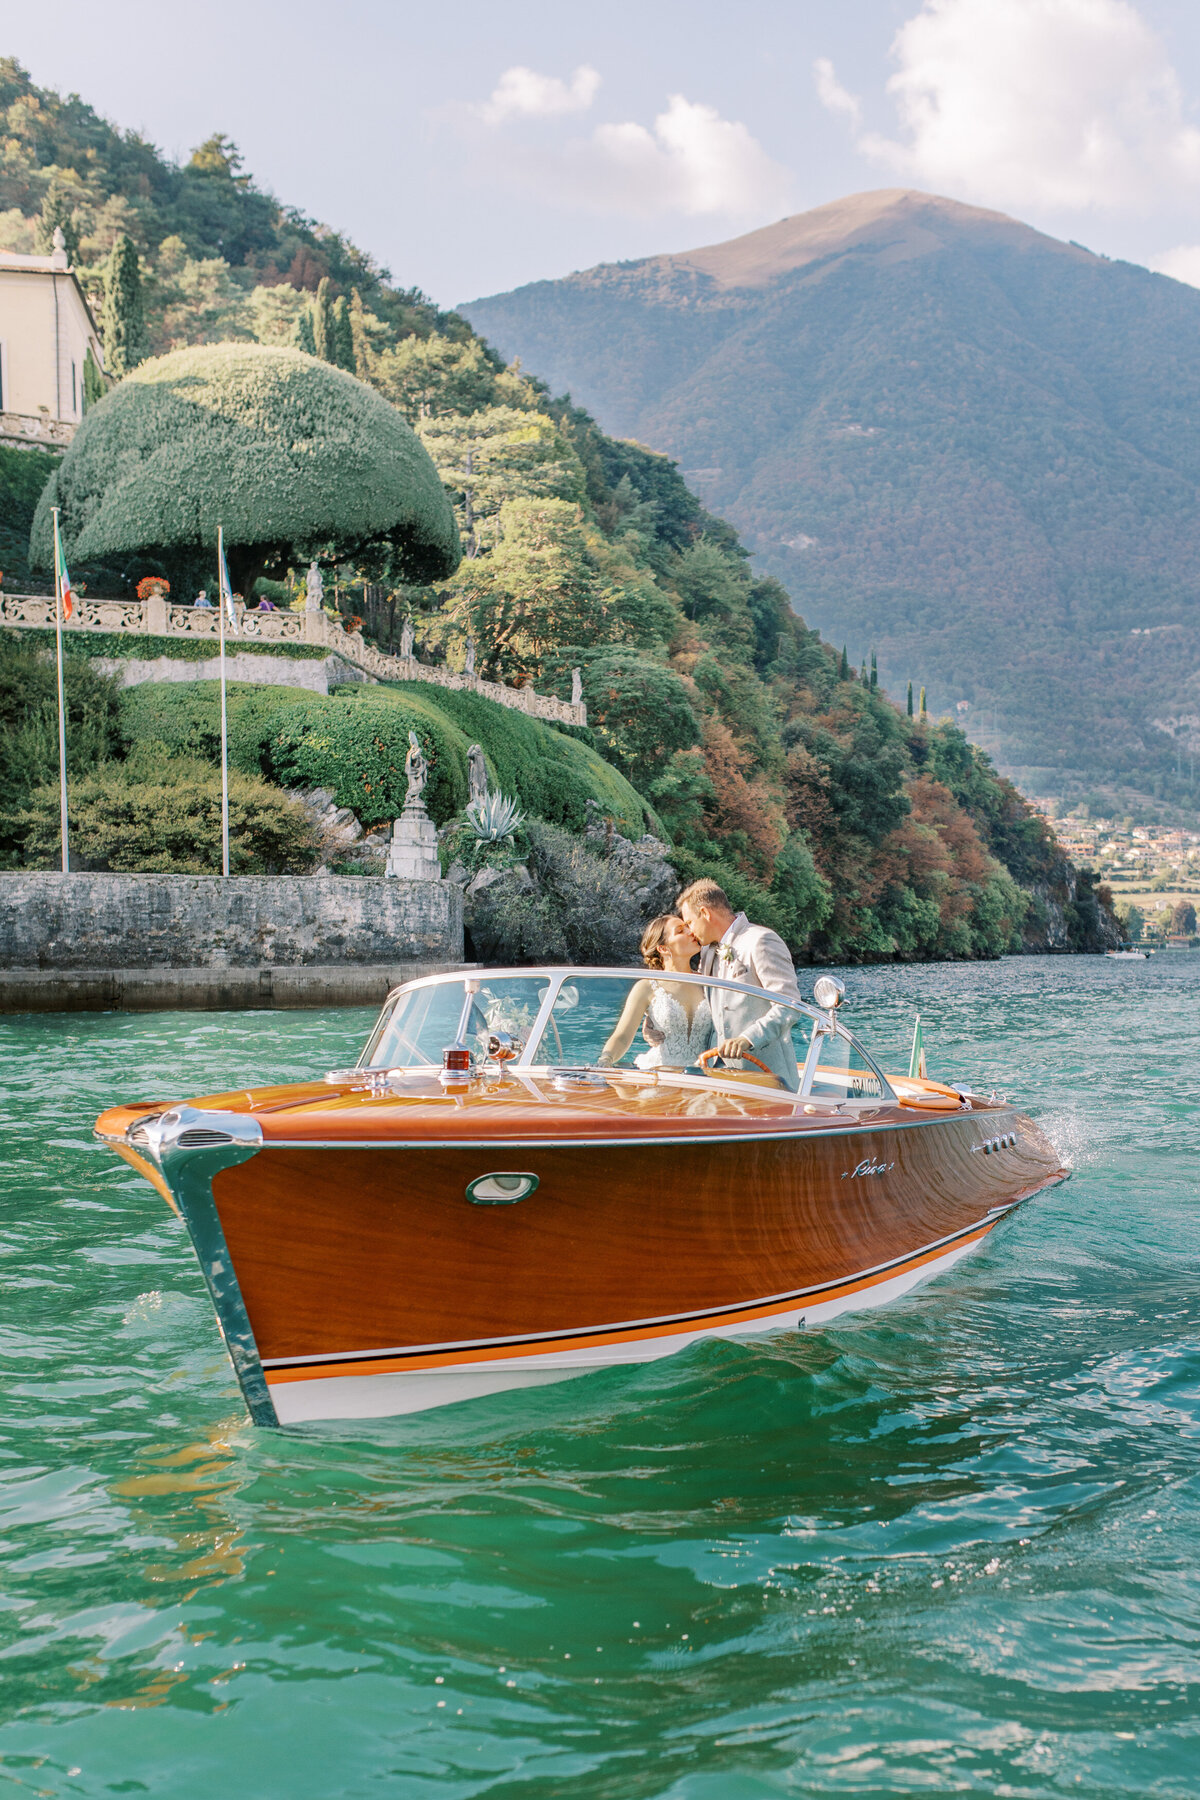 Bröllopspar i en Rivabåt utanför Villa Balbianello Como